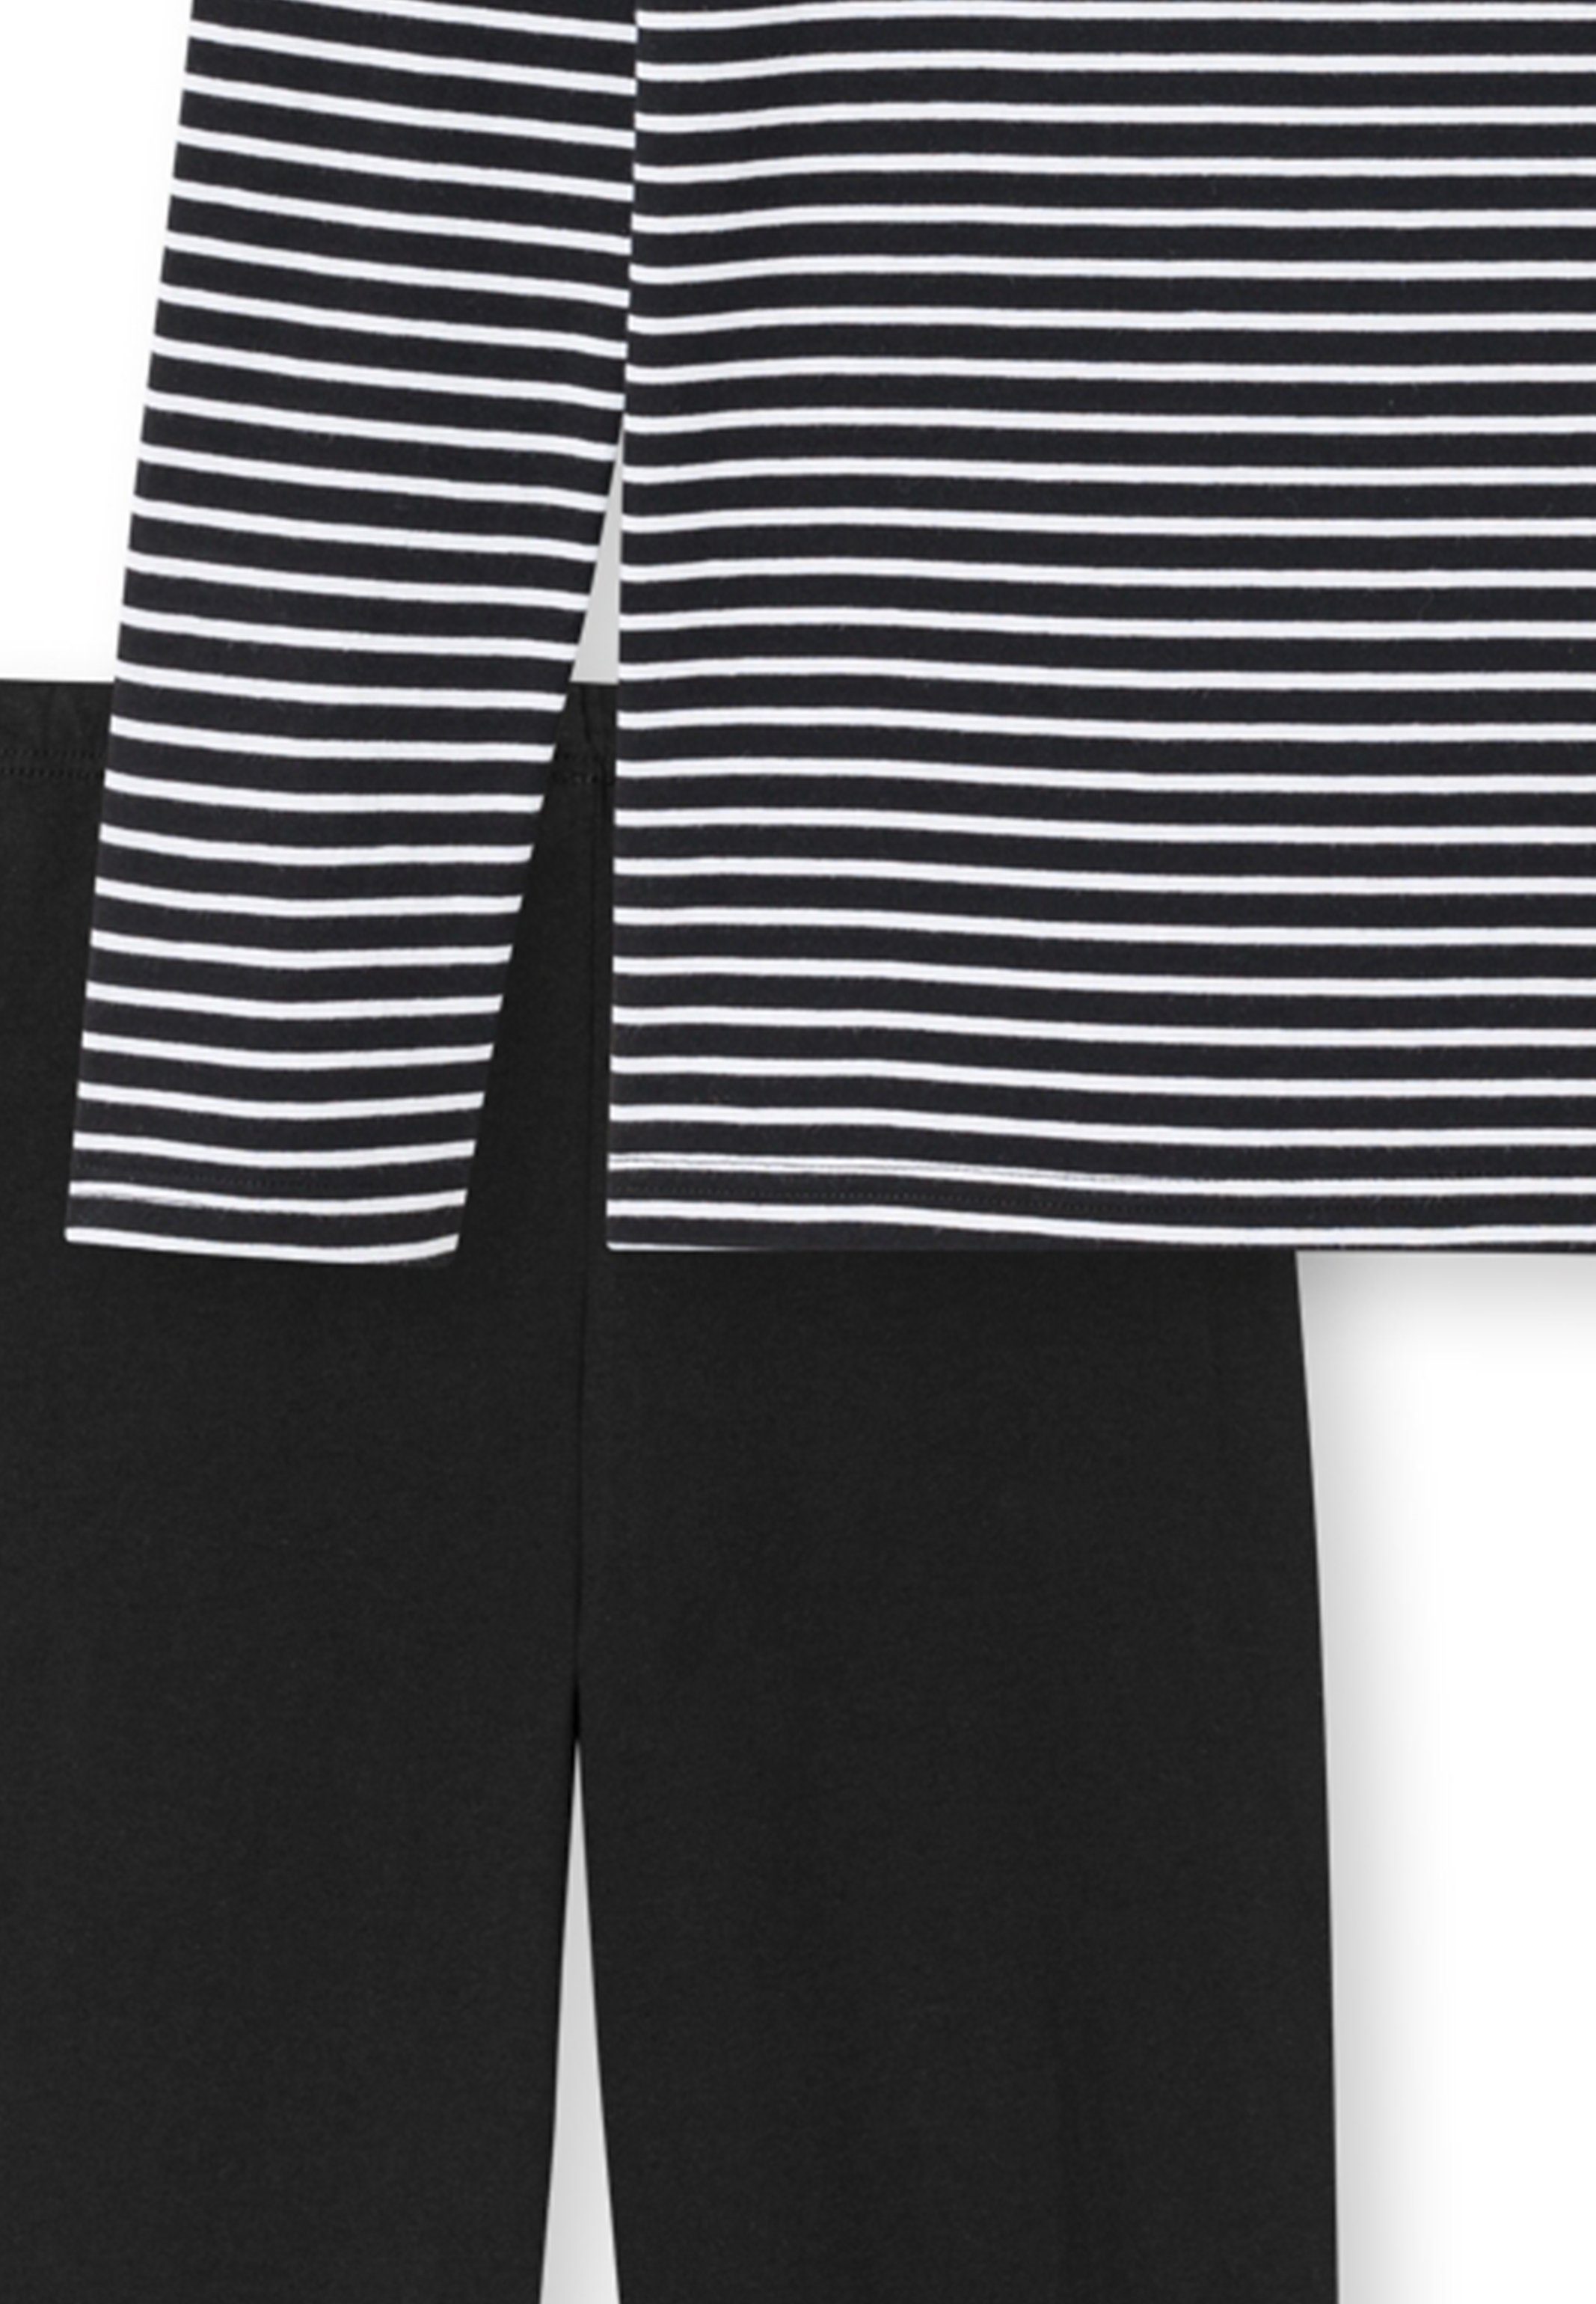 Schiesser Pyjama Teens Boys Baumwolle (Set, schwarz tlg) 2 Lang Shirt - Langarm - Streifen-Muster Schlafanzug mit